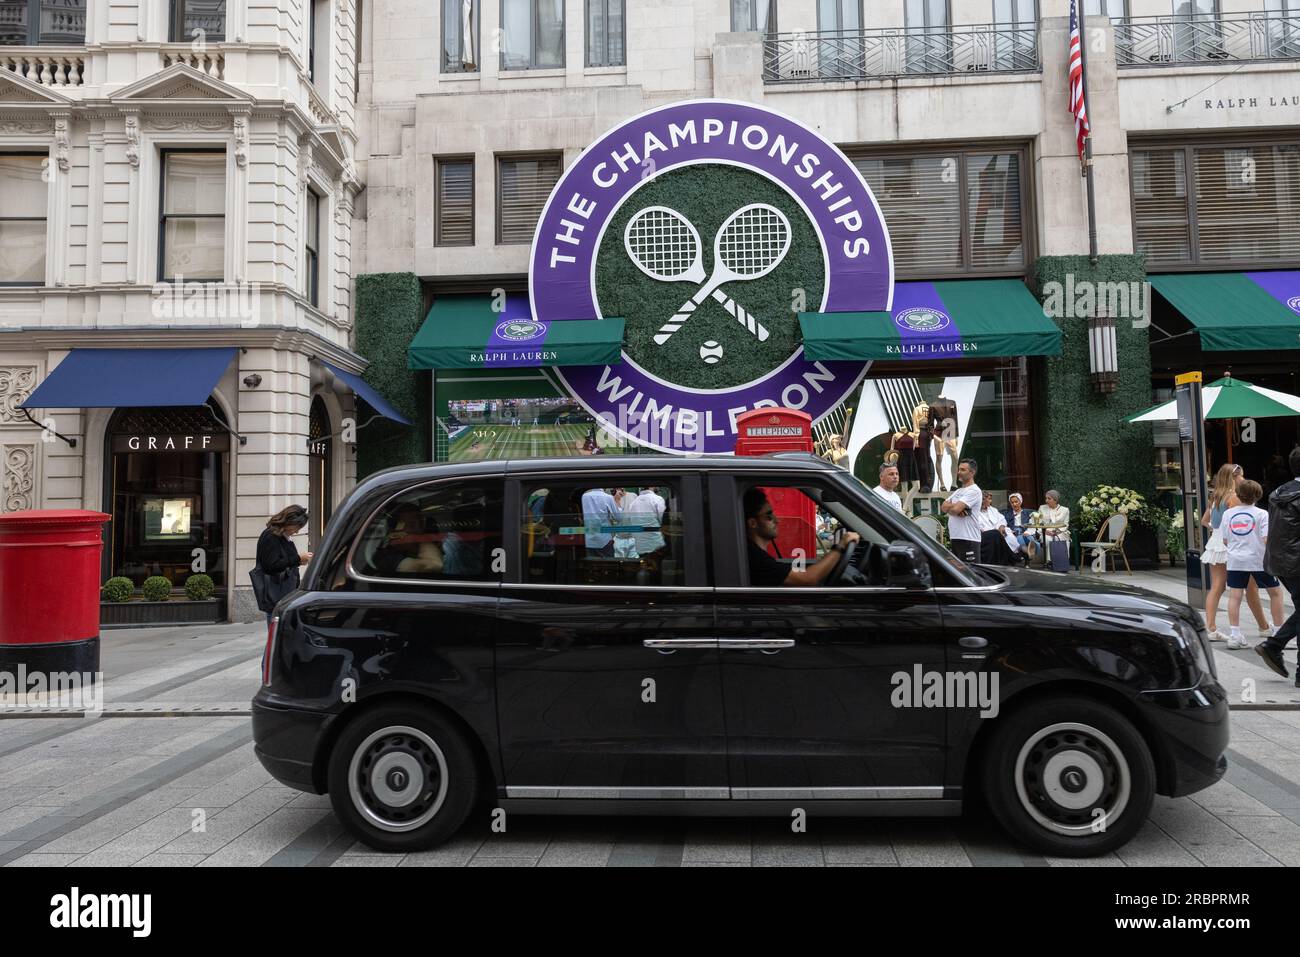 Le magasin Ralph Lauren de New Bond Street célèbre son partenariat continu avec le tournoi de Wimbledon en le décorant sur un thème de tennis, Mayfair. Banque D'Images